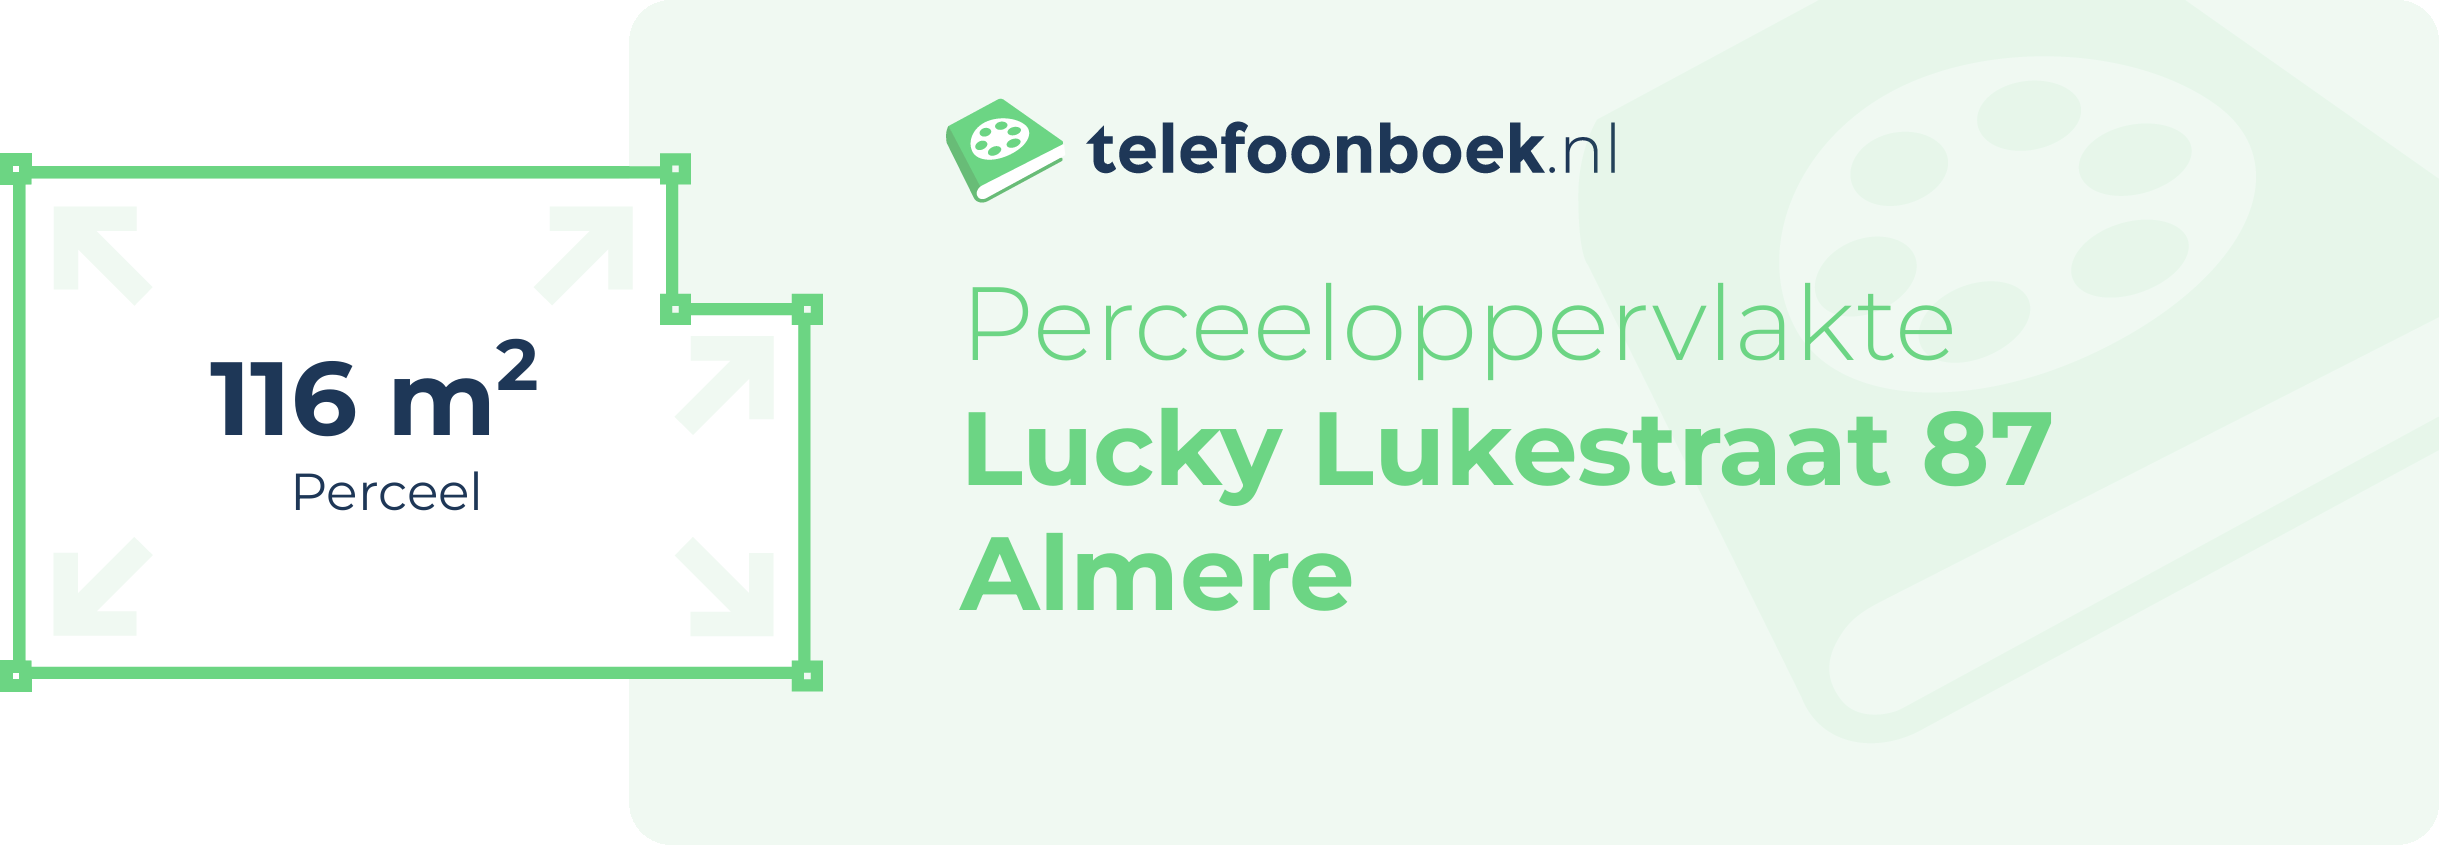 Perceeloppervlakte Lucky Lukestraat 87 Almere